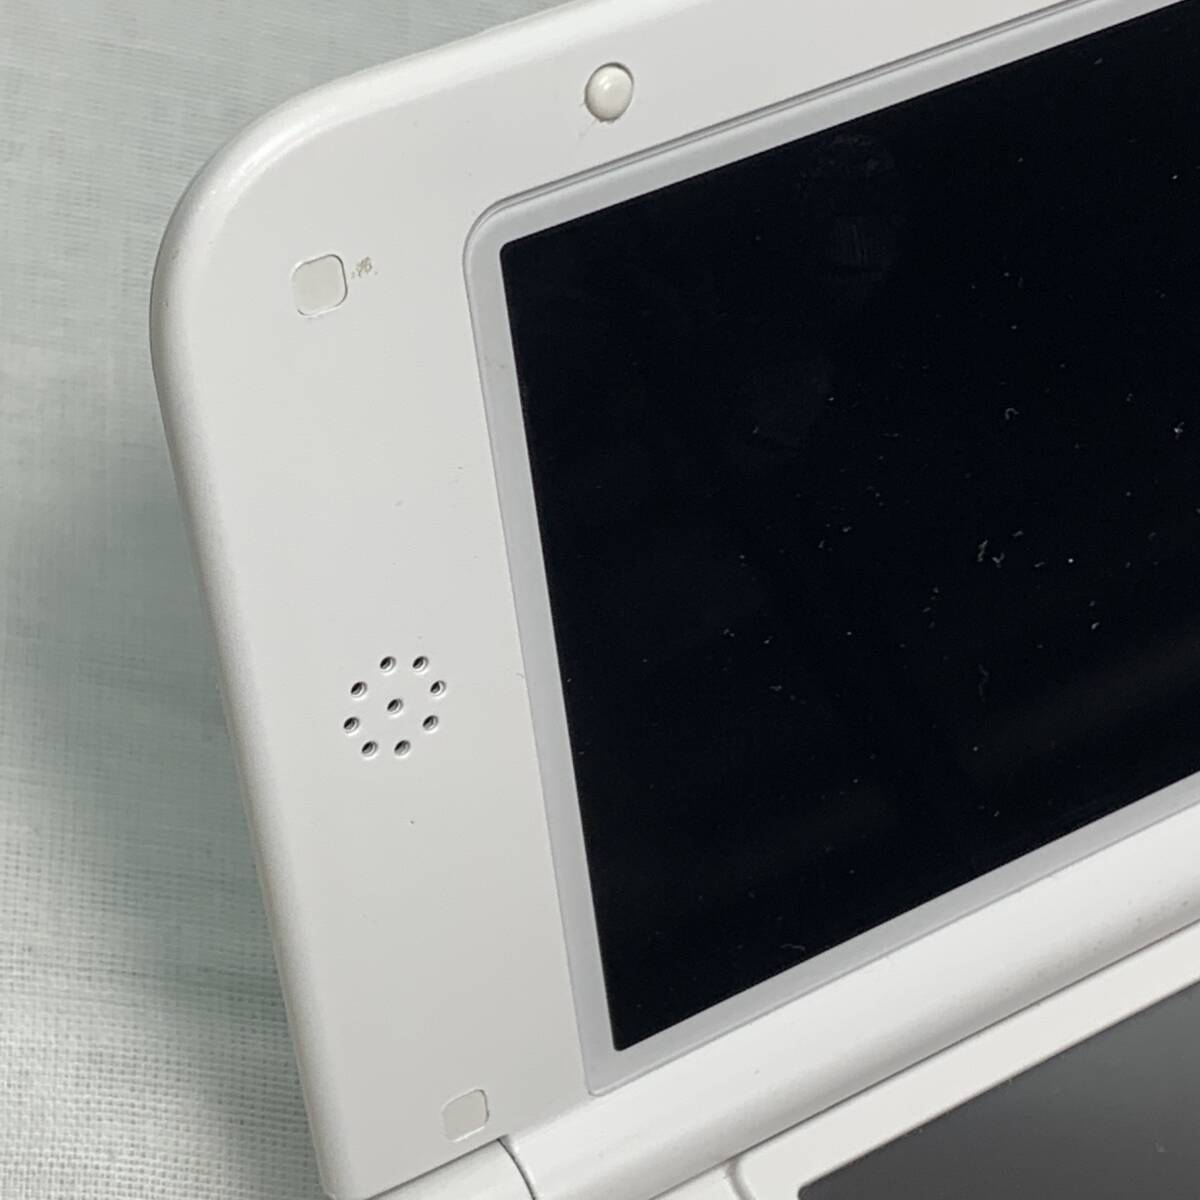 Nintendo 3DS LL 本体 ミント×ホワイト 動作確認済み 初期化済み ケース付き USED品 1円スタート 1円ショップ 1スタ _画像9